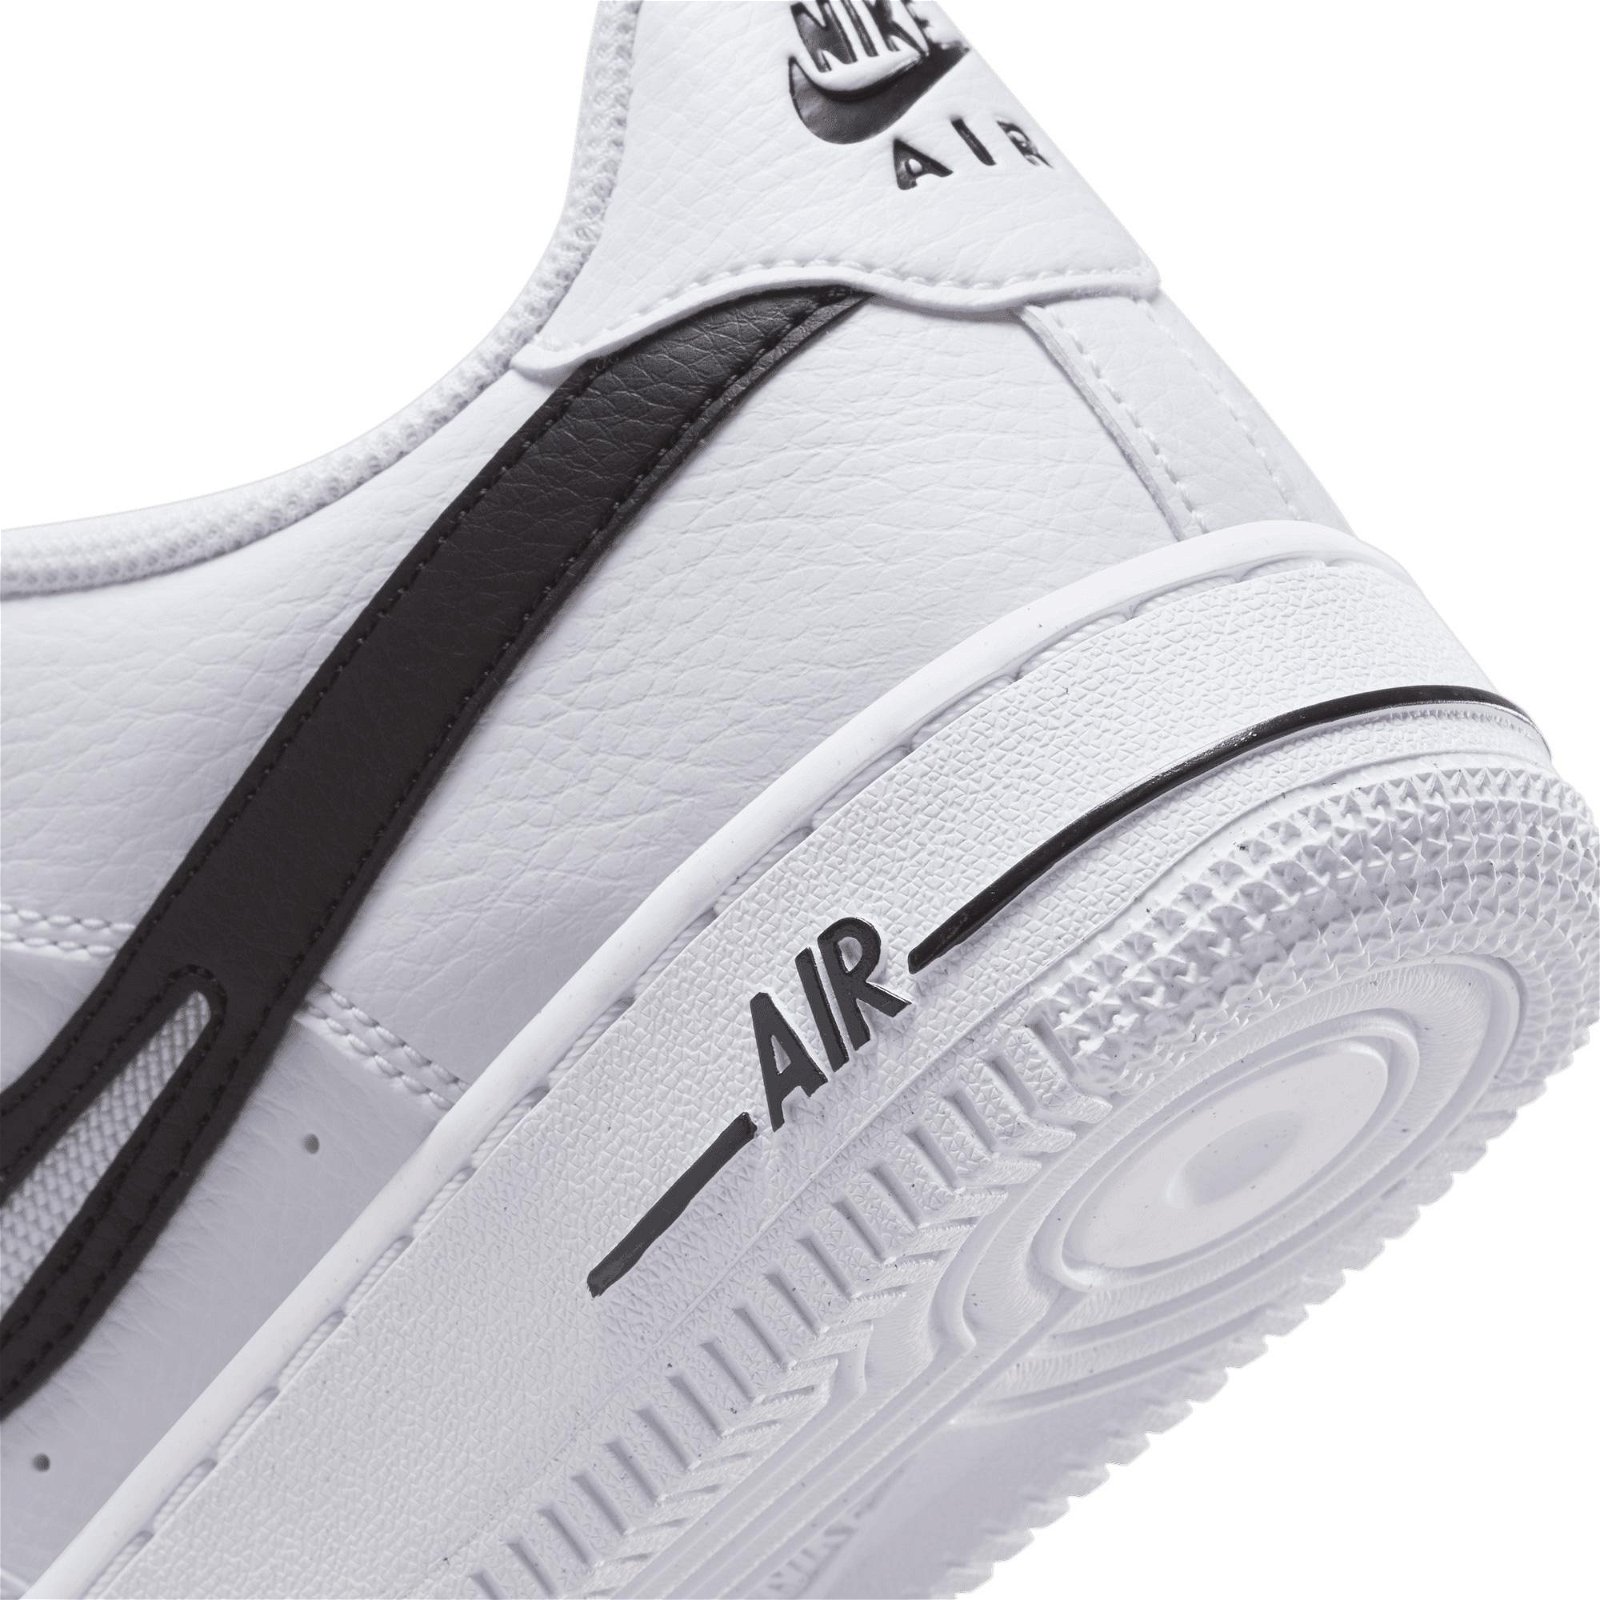 Nike Air Force 1 Si Çocuk Beyaz Spor Ayakkabı